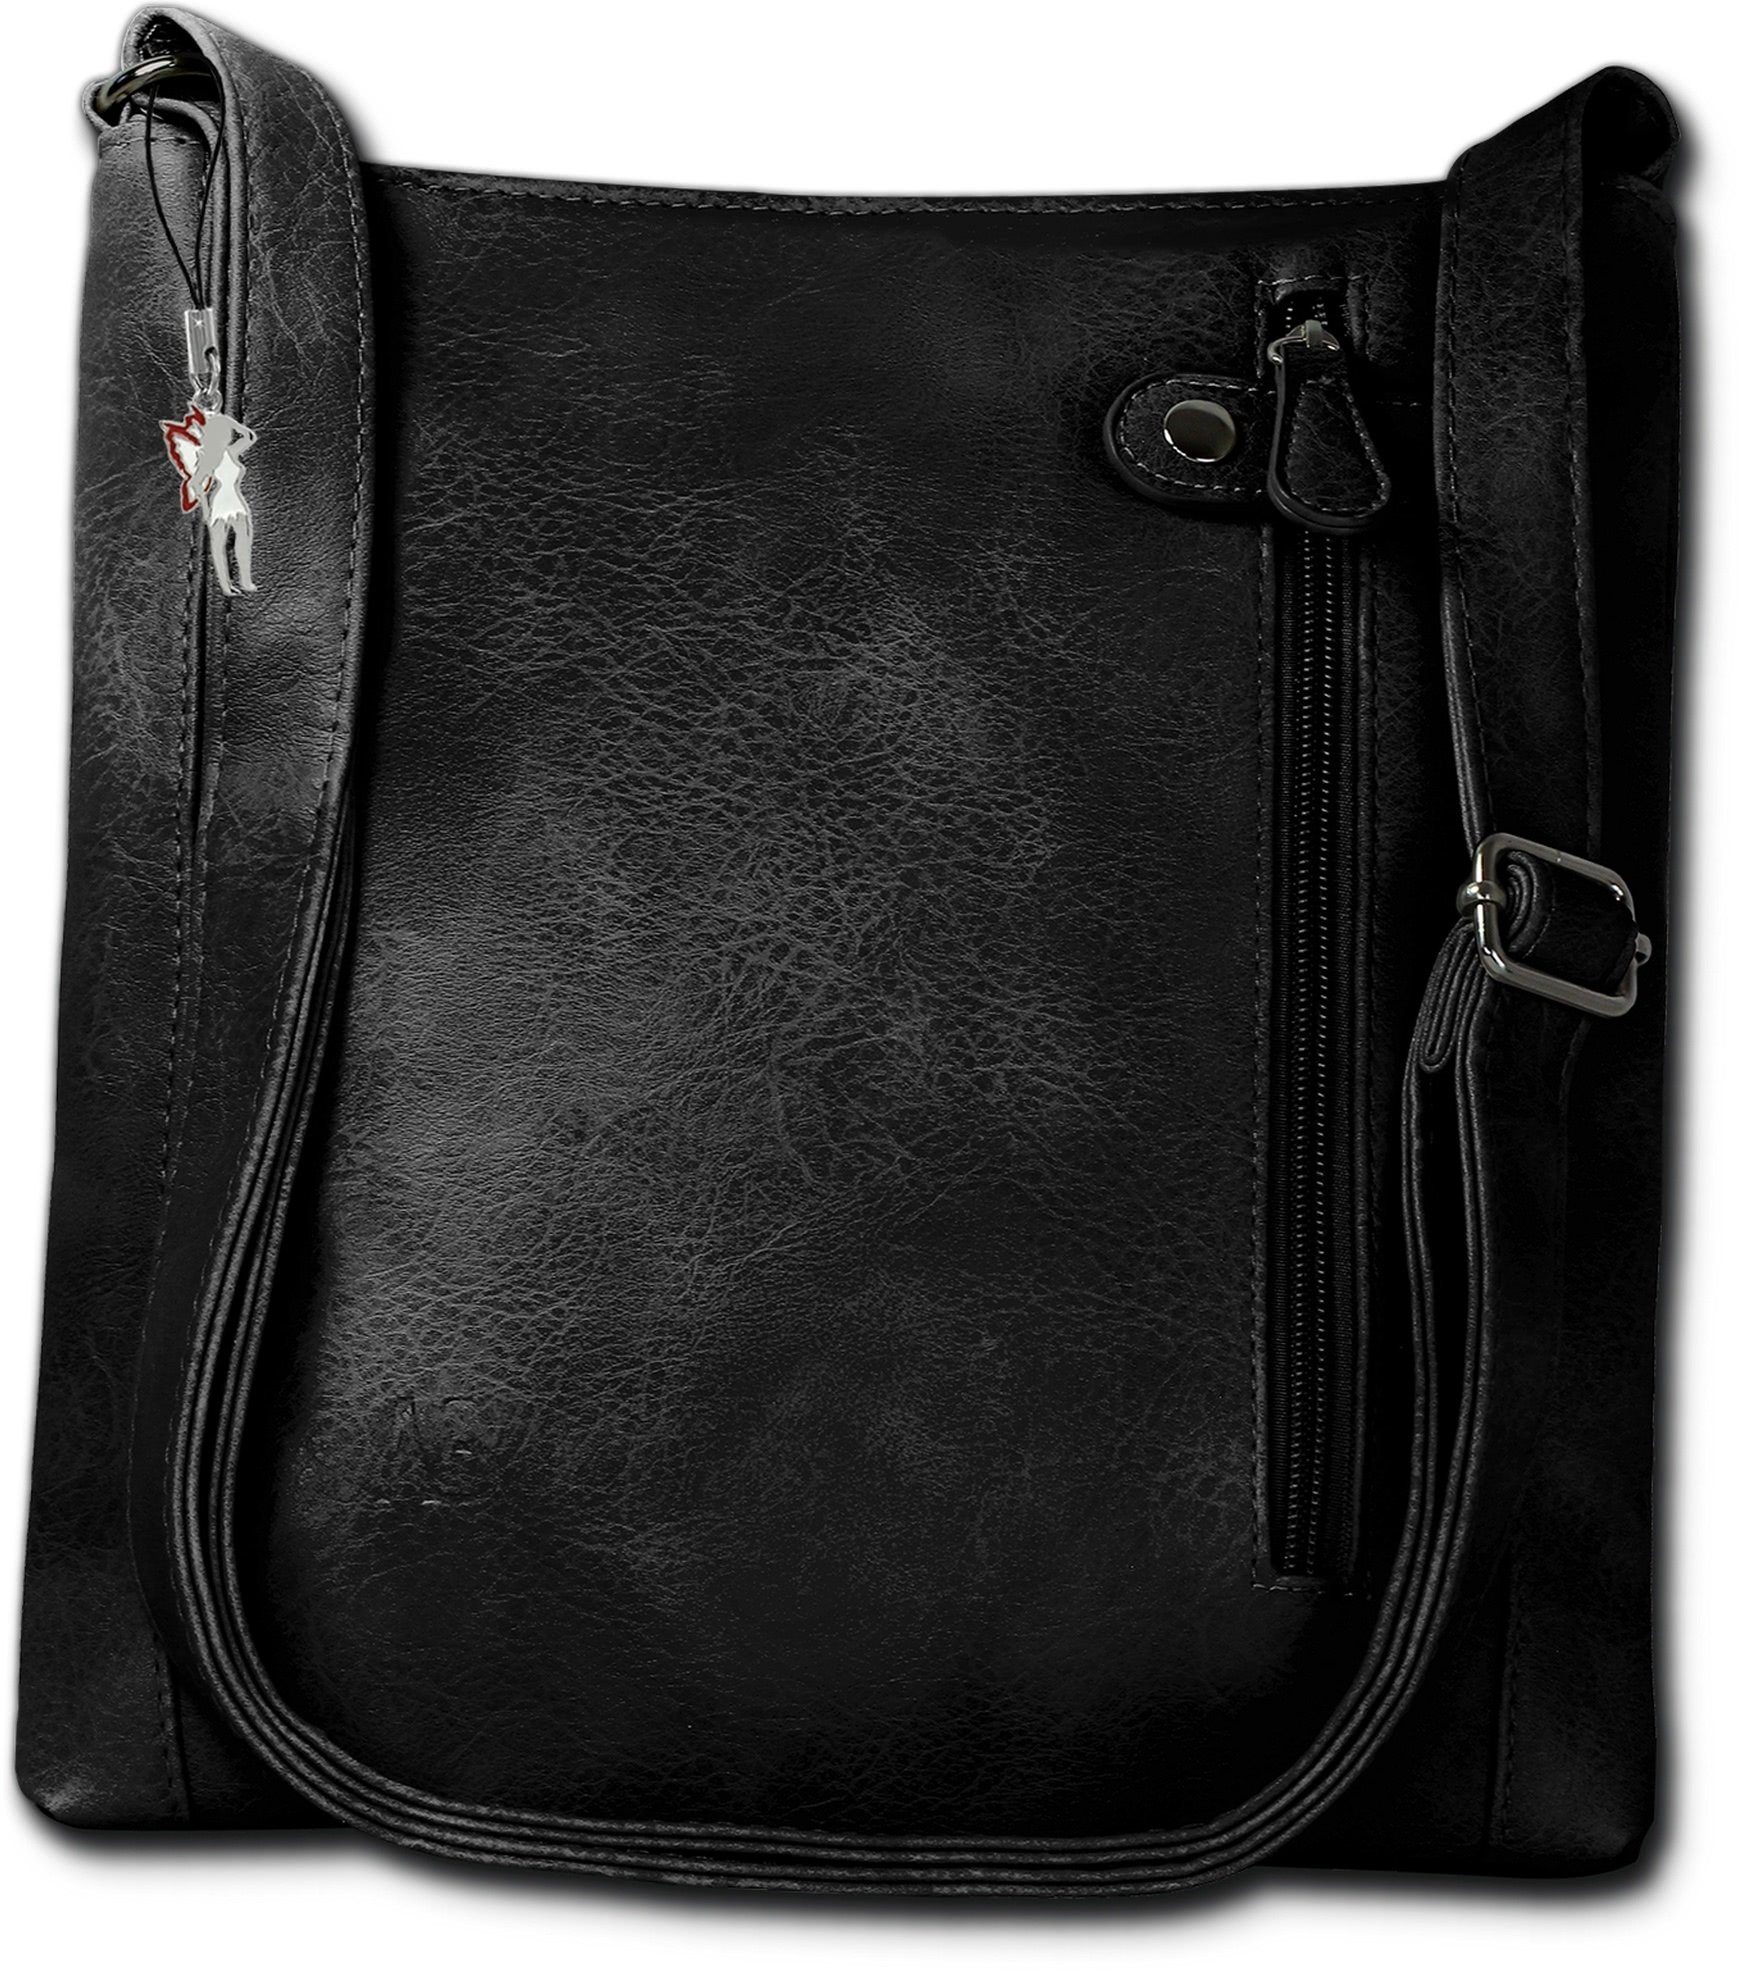 New Bags Umhängetasche NewBags Umhängetasche Handtasche black, Damen  Handtasche, Umhängetasche schwarz, Größe ca. 27,5cm, halbrund